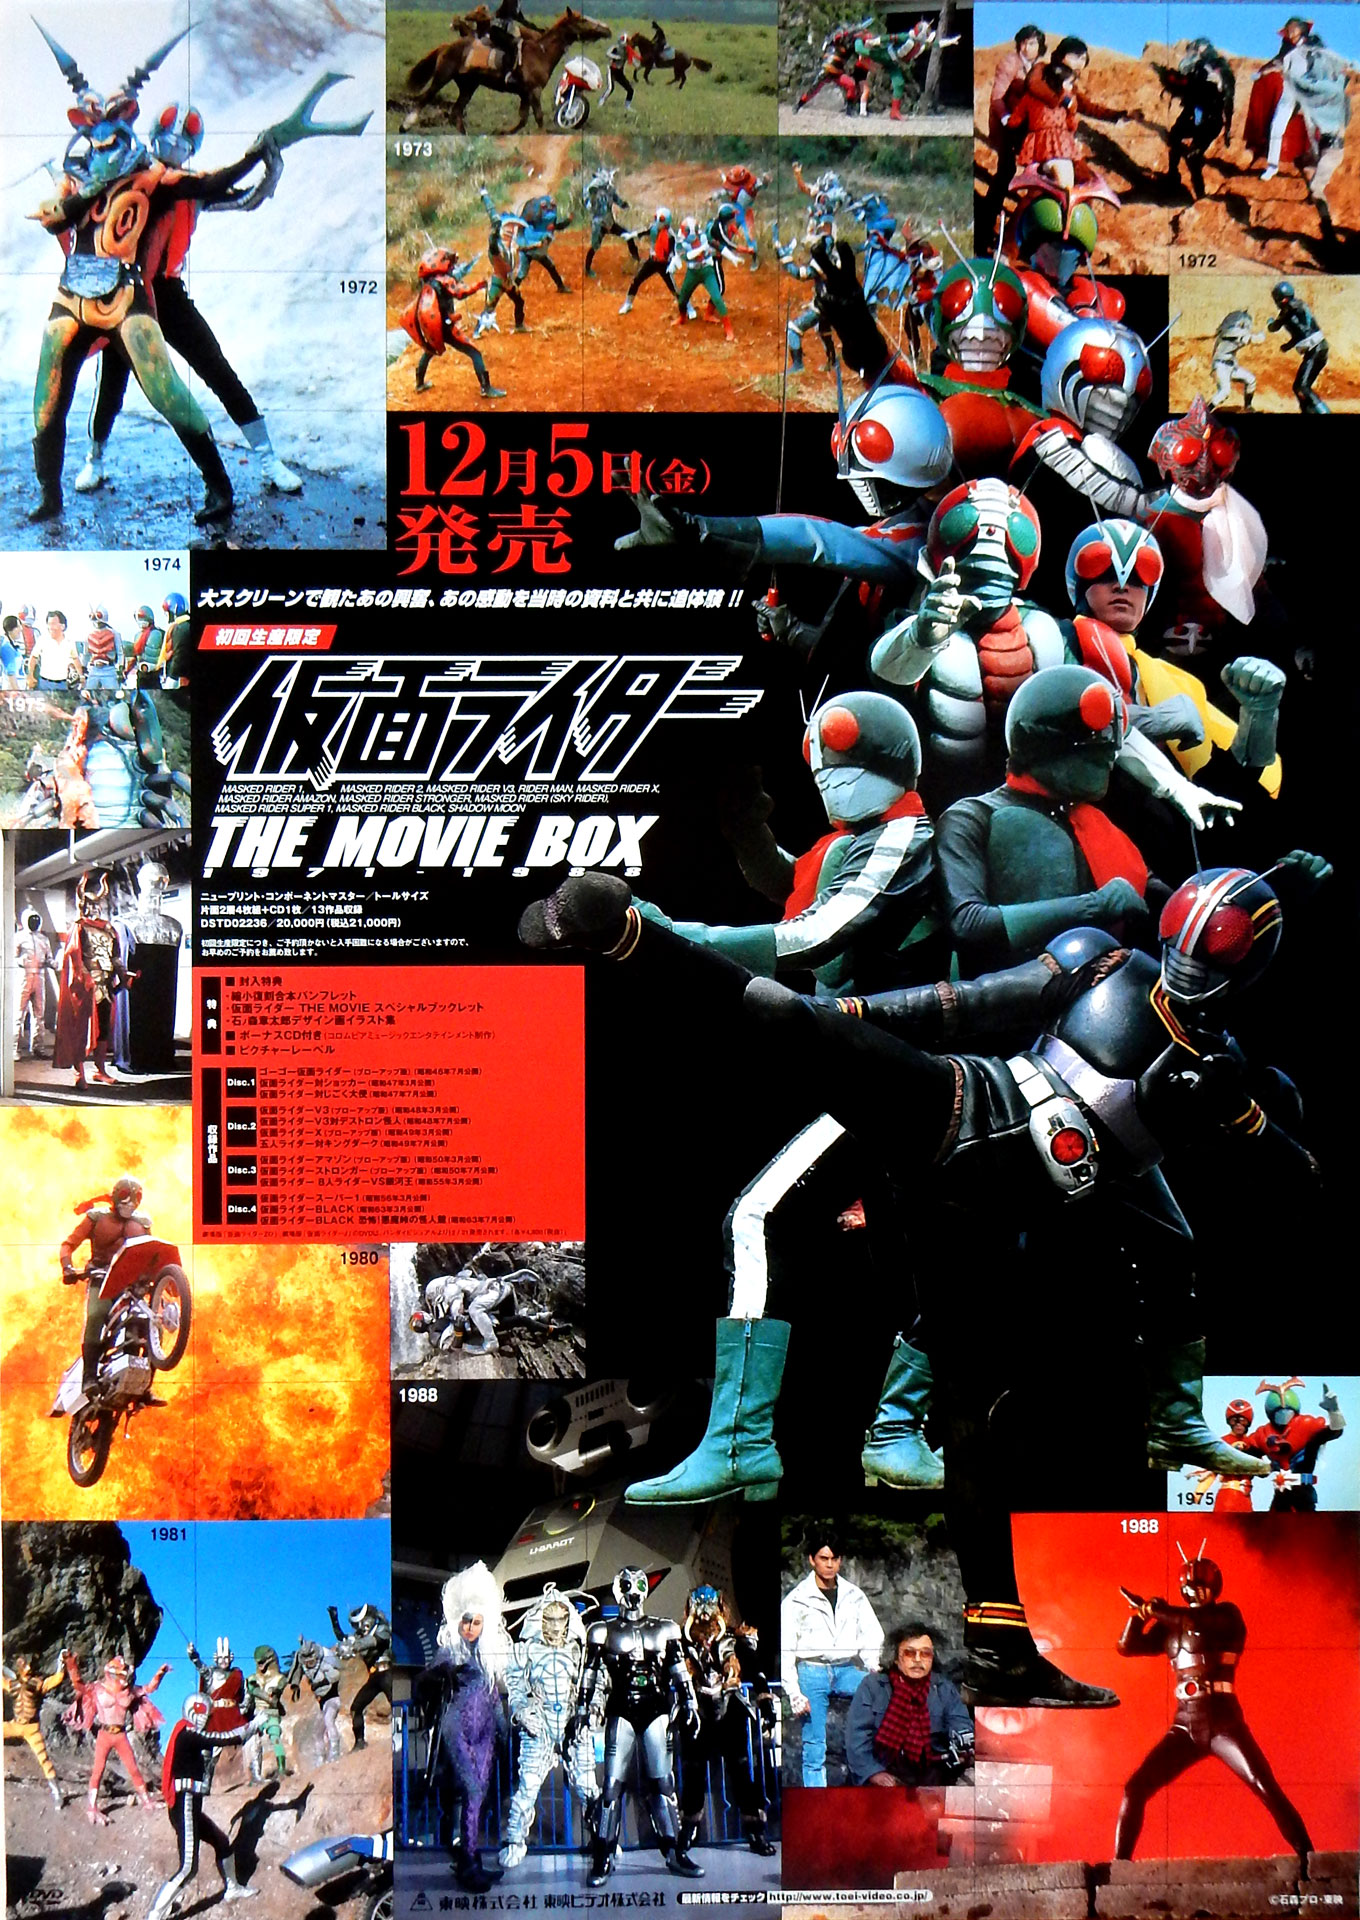 仮面ライダー THE MOVIE BOX1971-1988のポスター